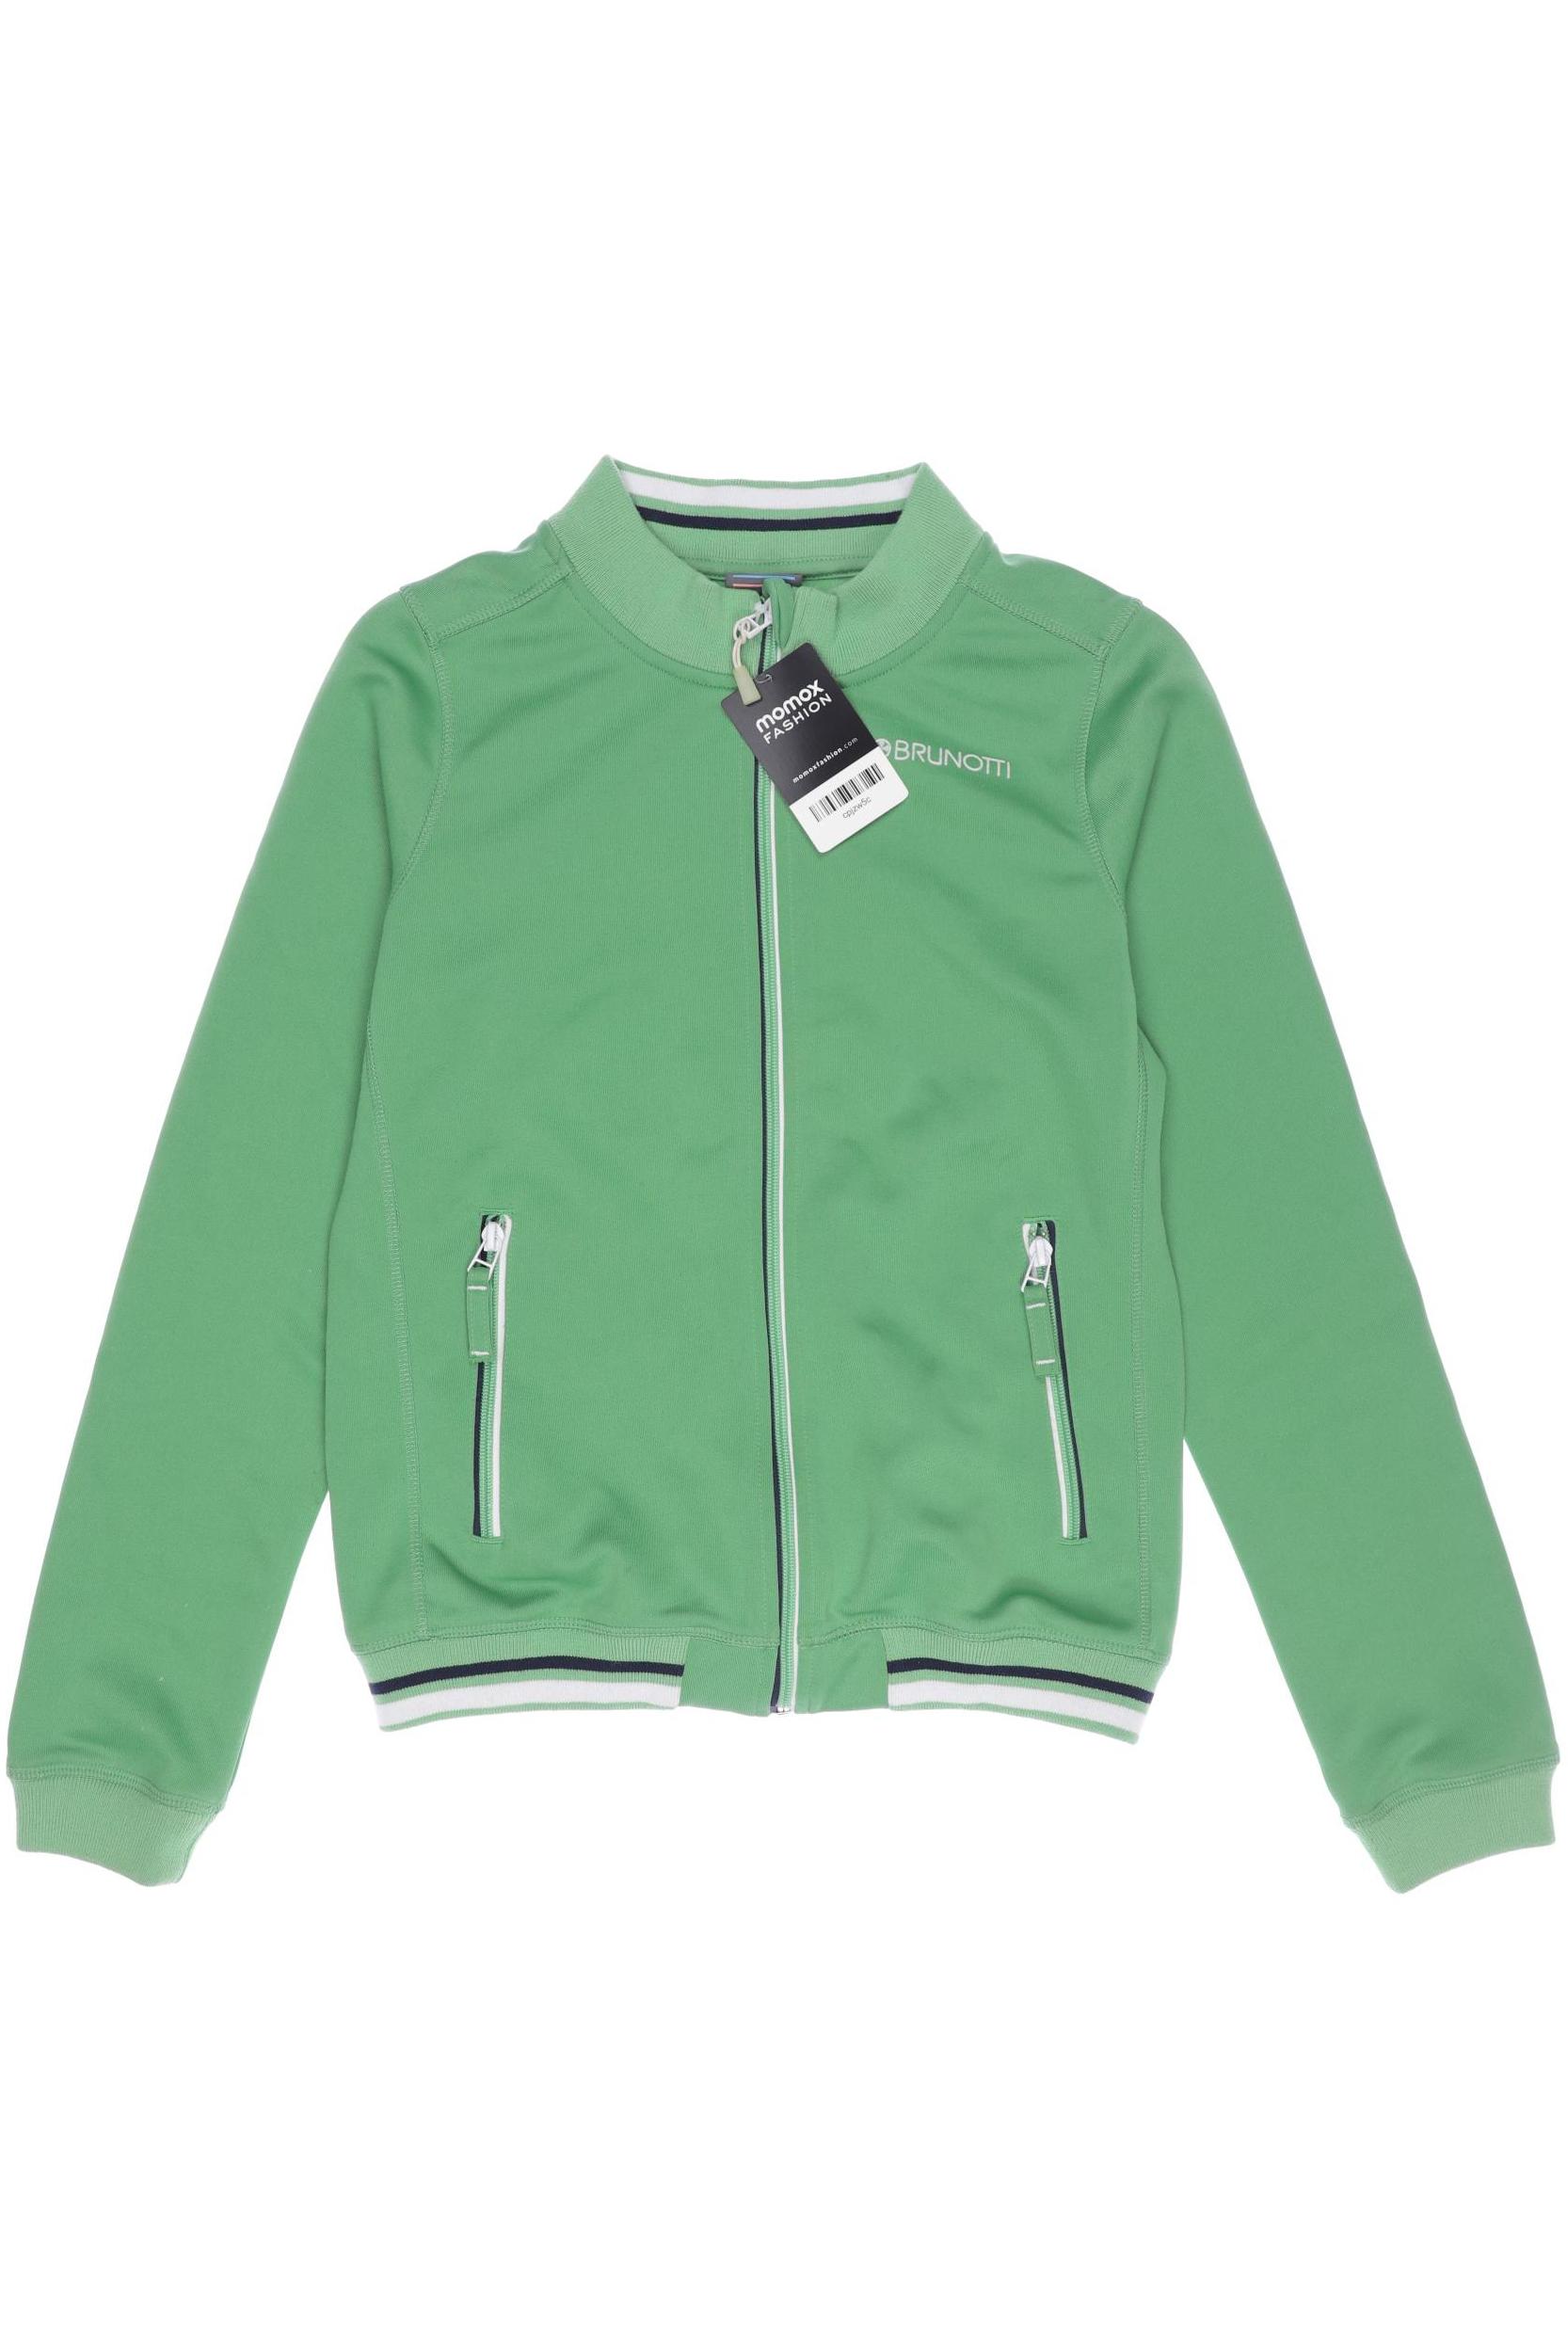 Brunotti Damen Hoodies & Sweater, grün, Gr. 164 von brunotti